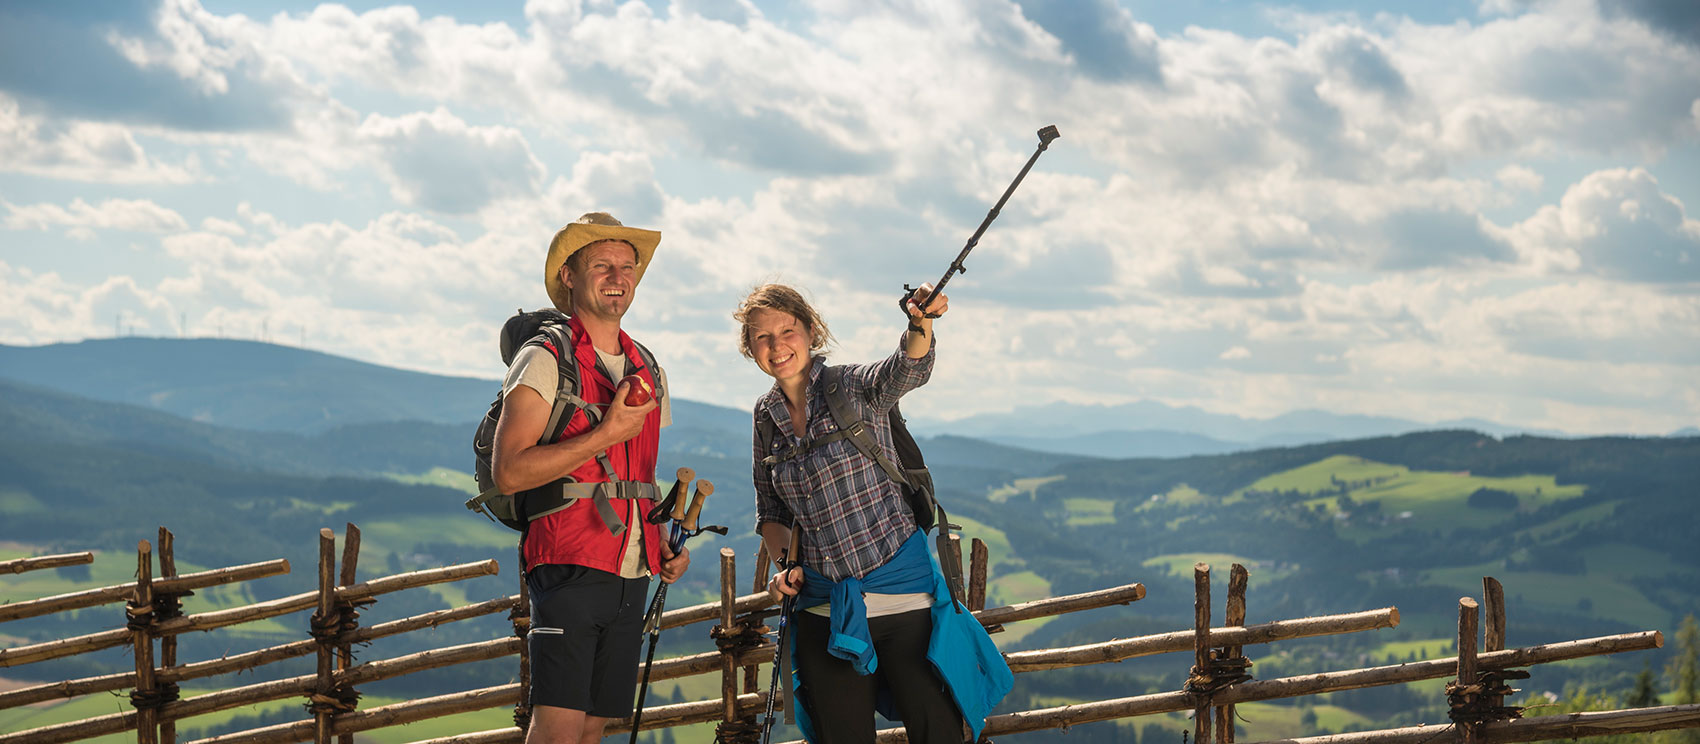 Wanderpärchen mit Rucksack und Nordic-Walking-Stöcken ausgestattet blickt mit Freude in die Landschaft